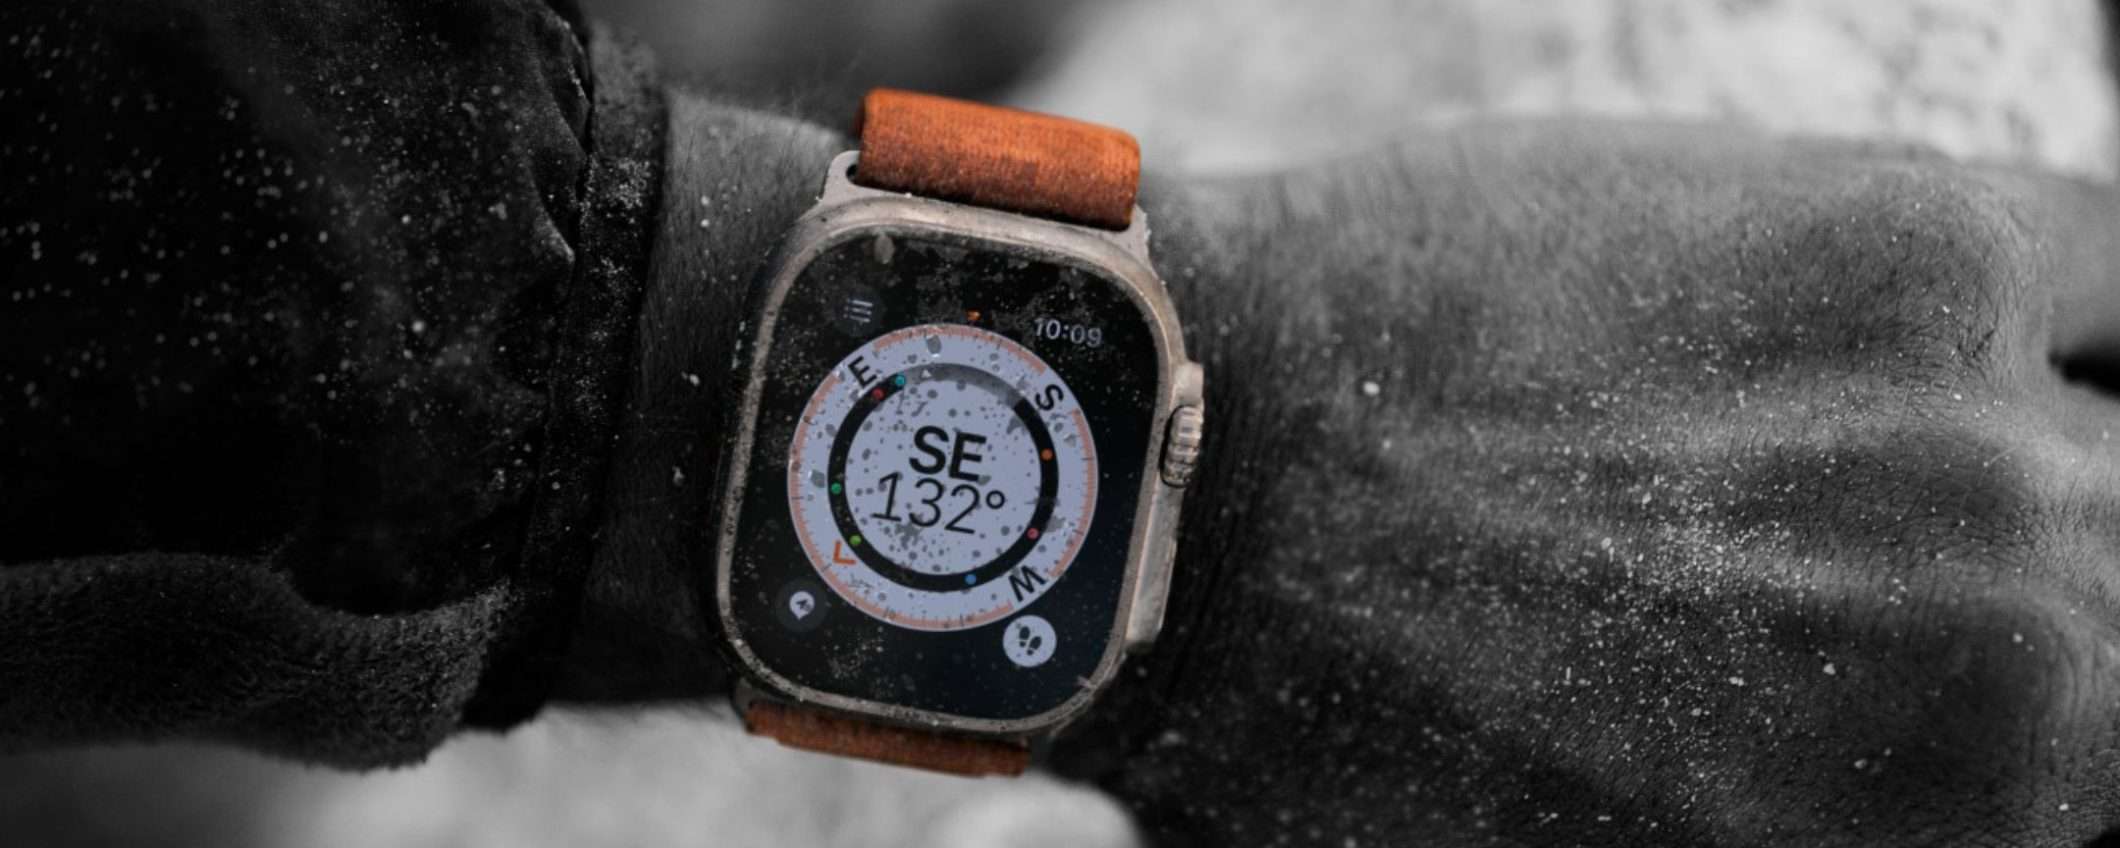 Apple Watch Ultra: spunta un prototipo con scocca in colorazione scura